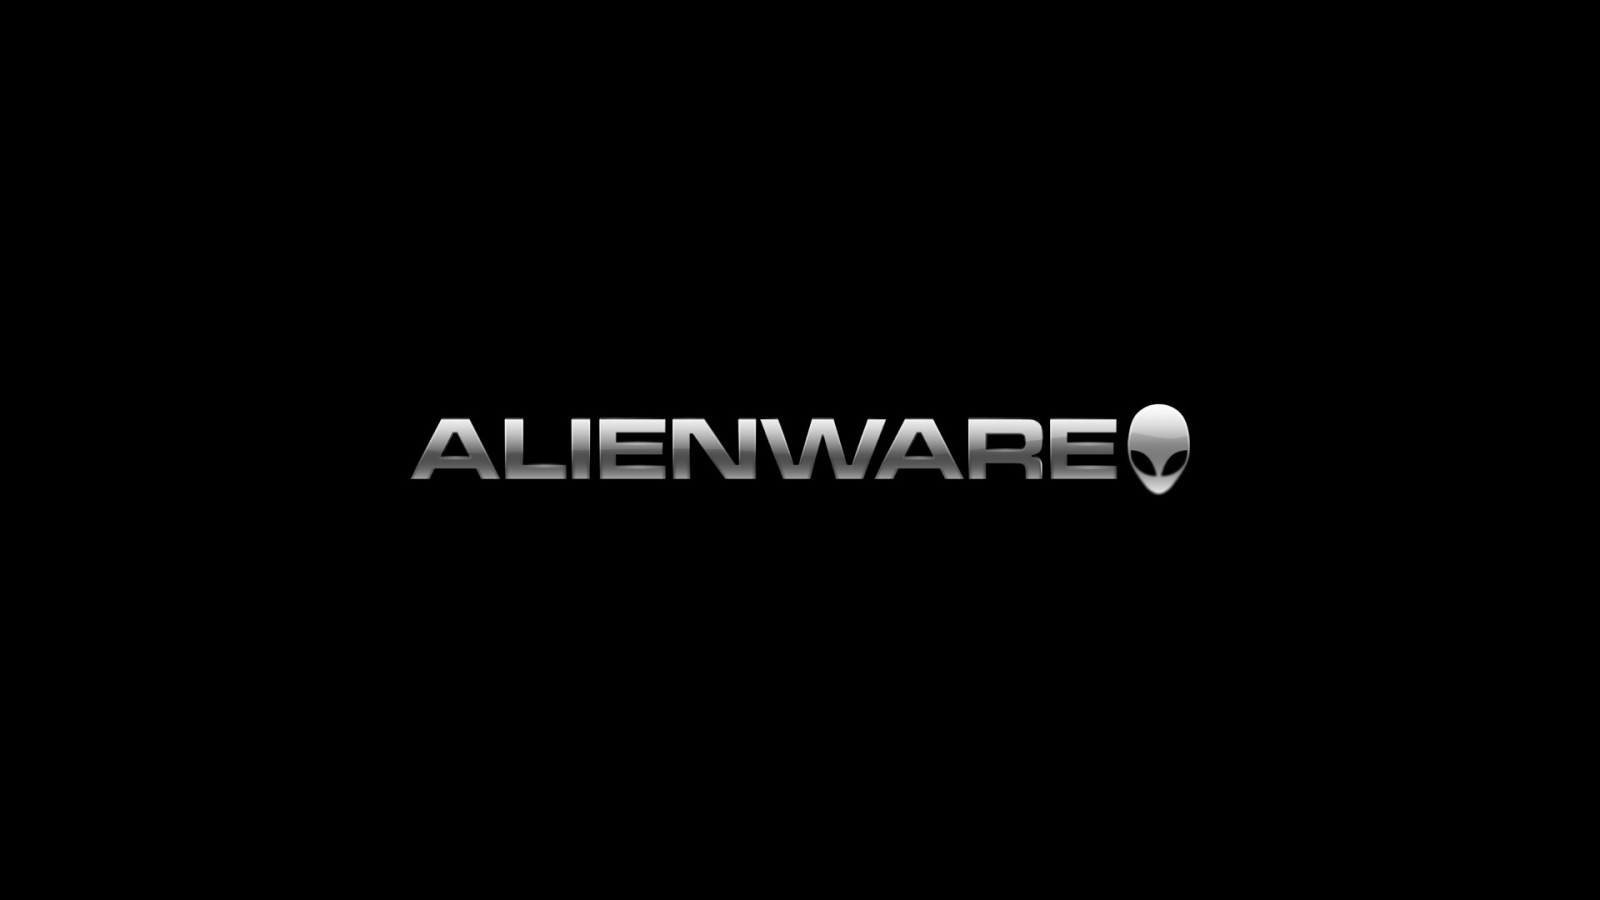 Black Alienware for 1600 x 900 HDTV resolution